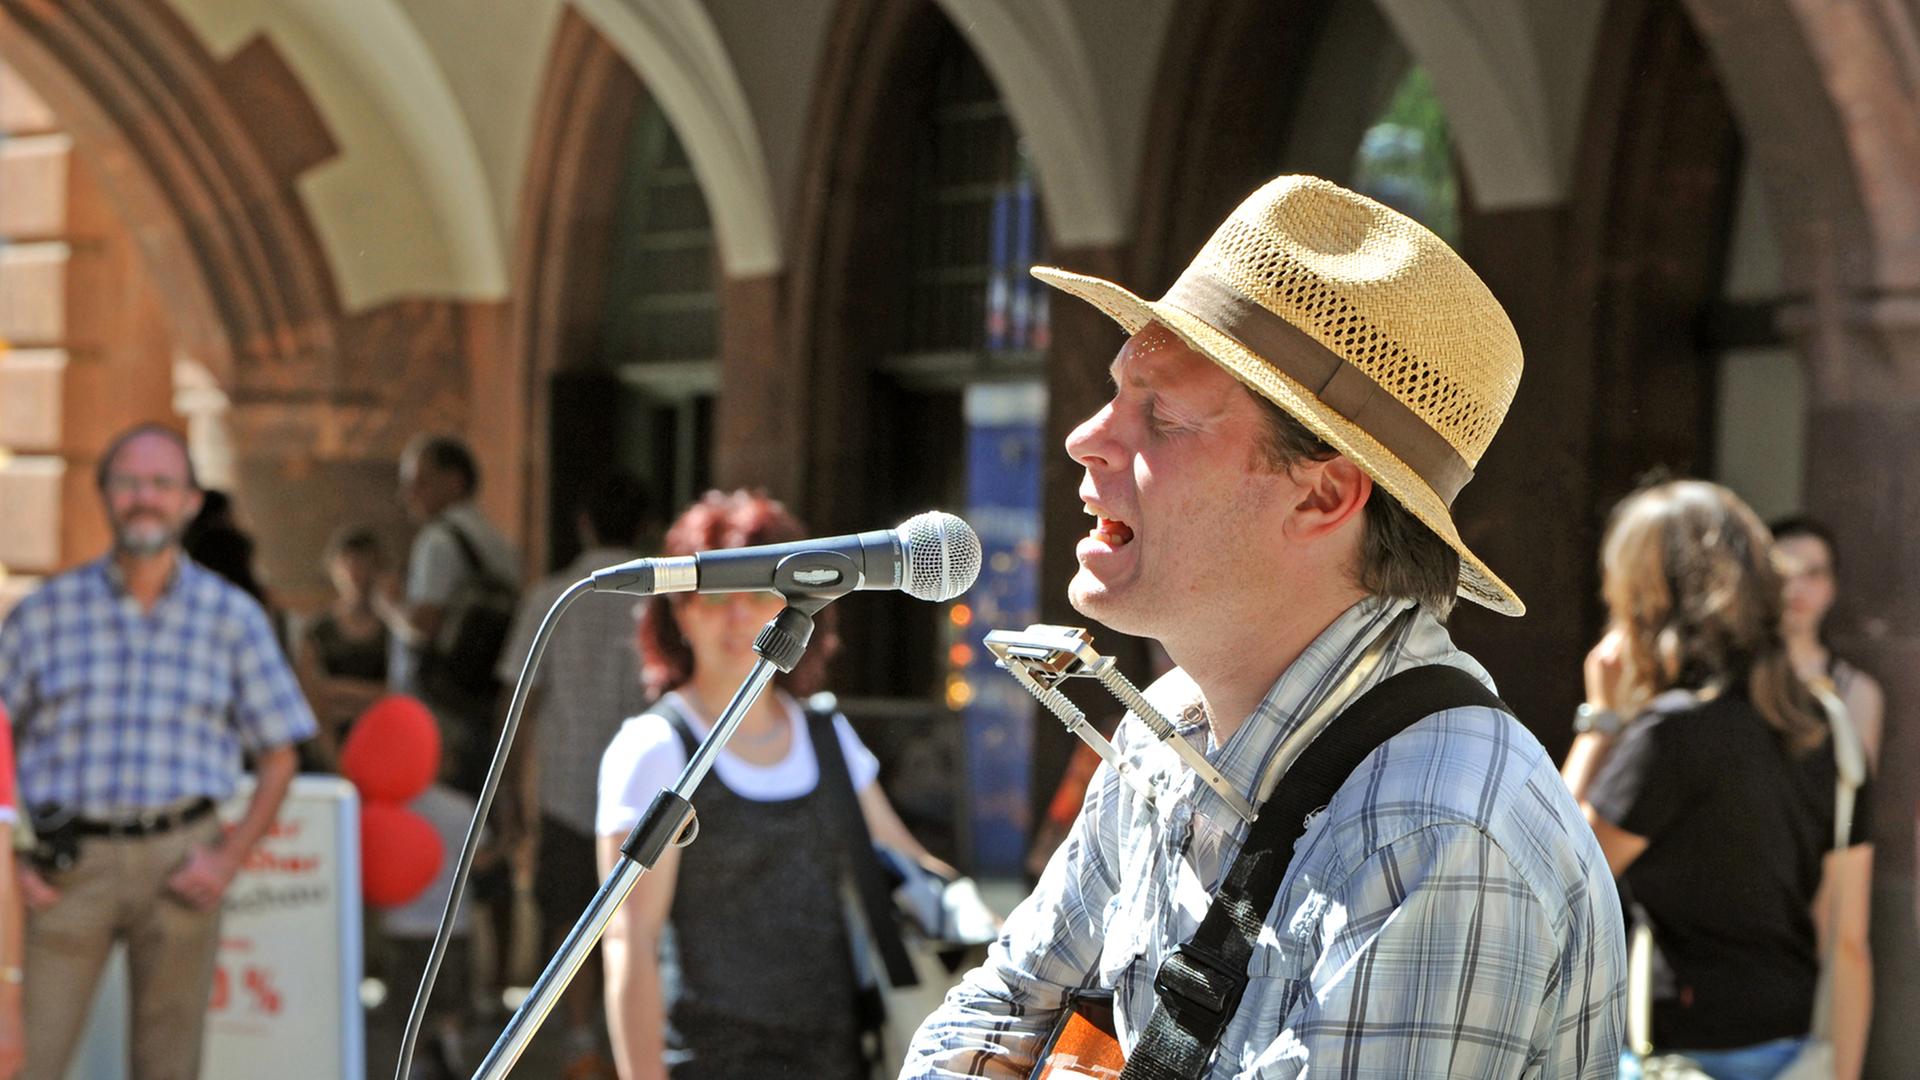 Der Musiker Jimmy Kelly singt im Stadtzentrum von Leipzig als Straßenmusikant. Er trägt einen Strohsonnenhut und spielt Gitarre.